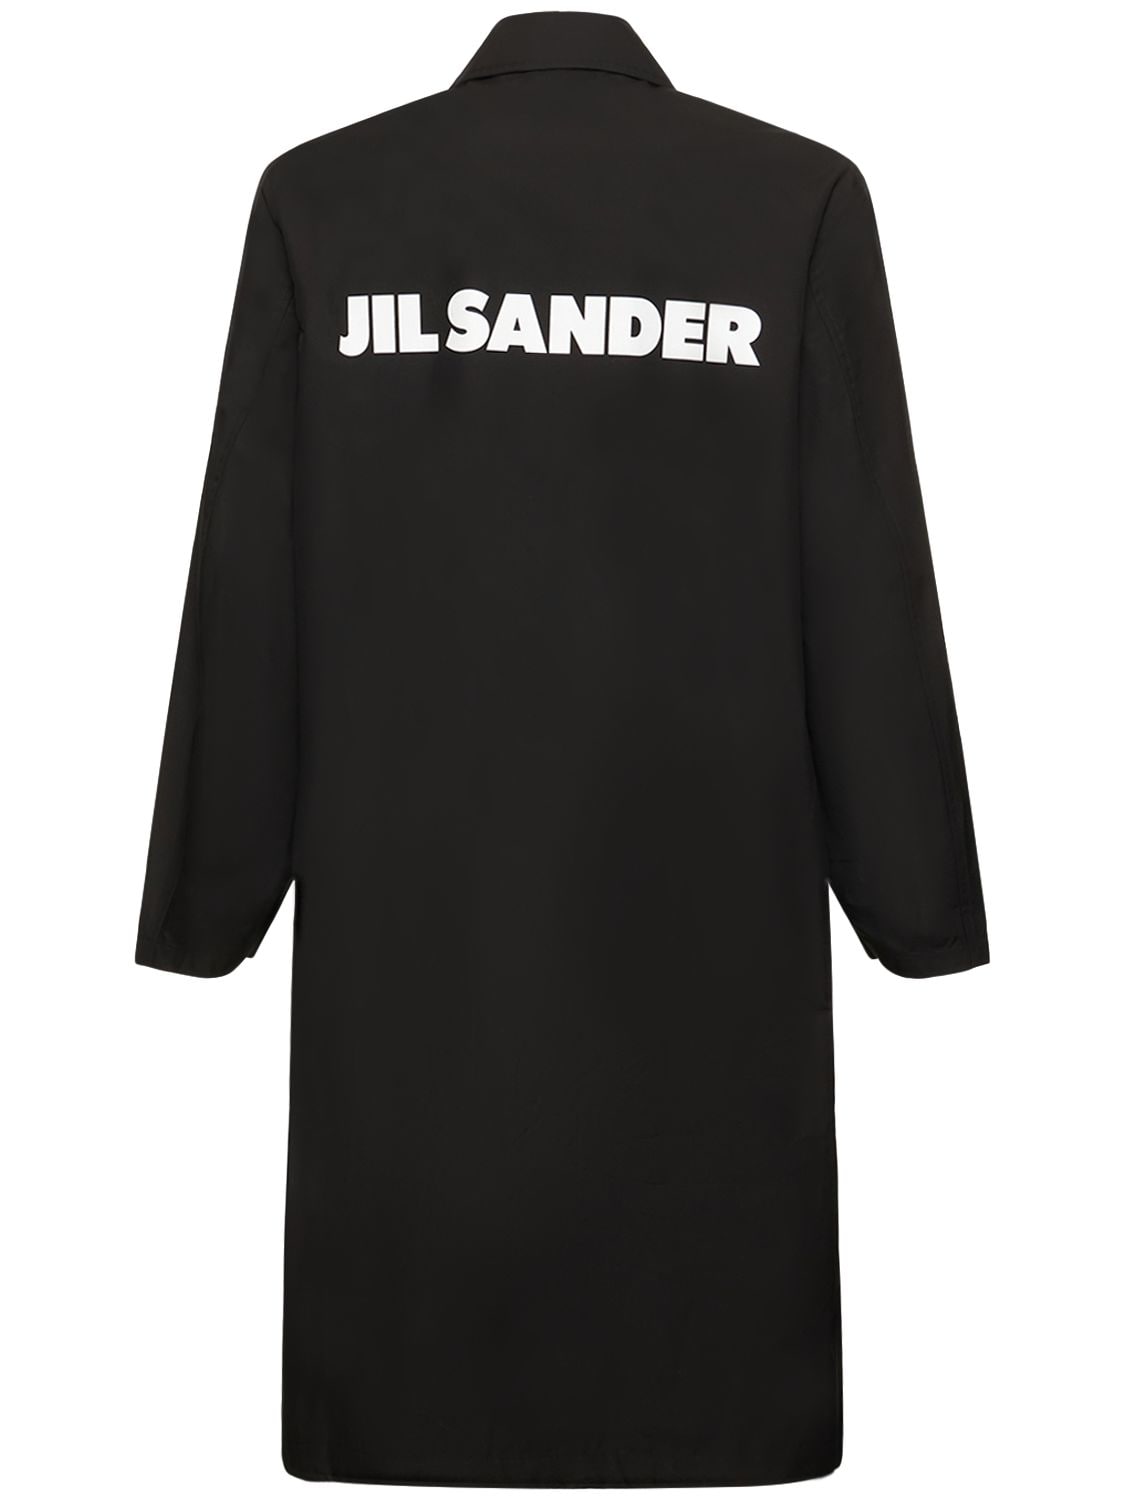 Jil Sander Printed Cotton Poplin Parka Coat In Black